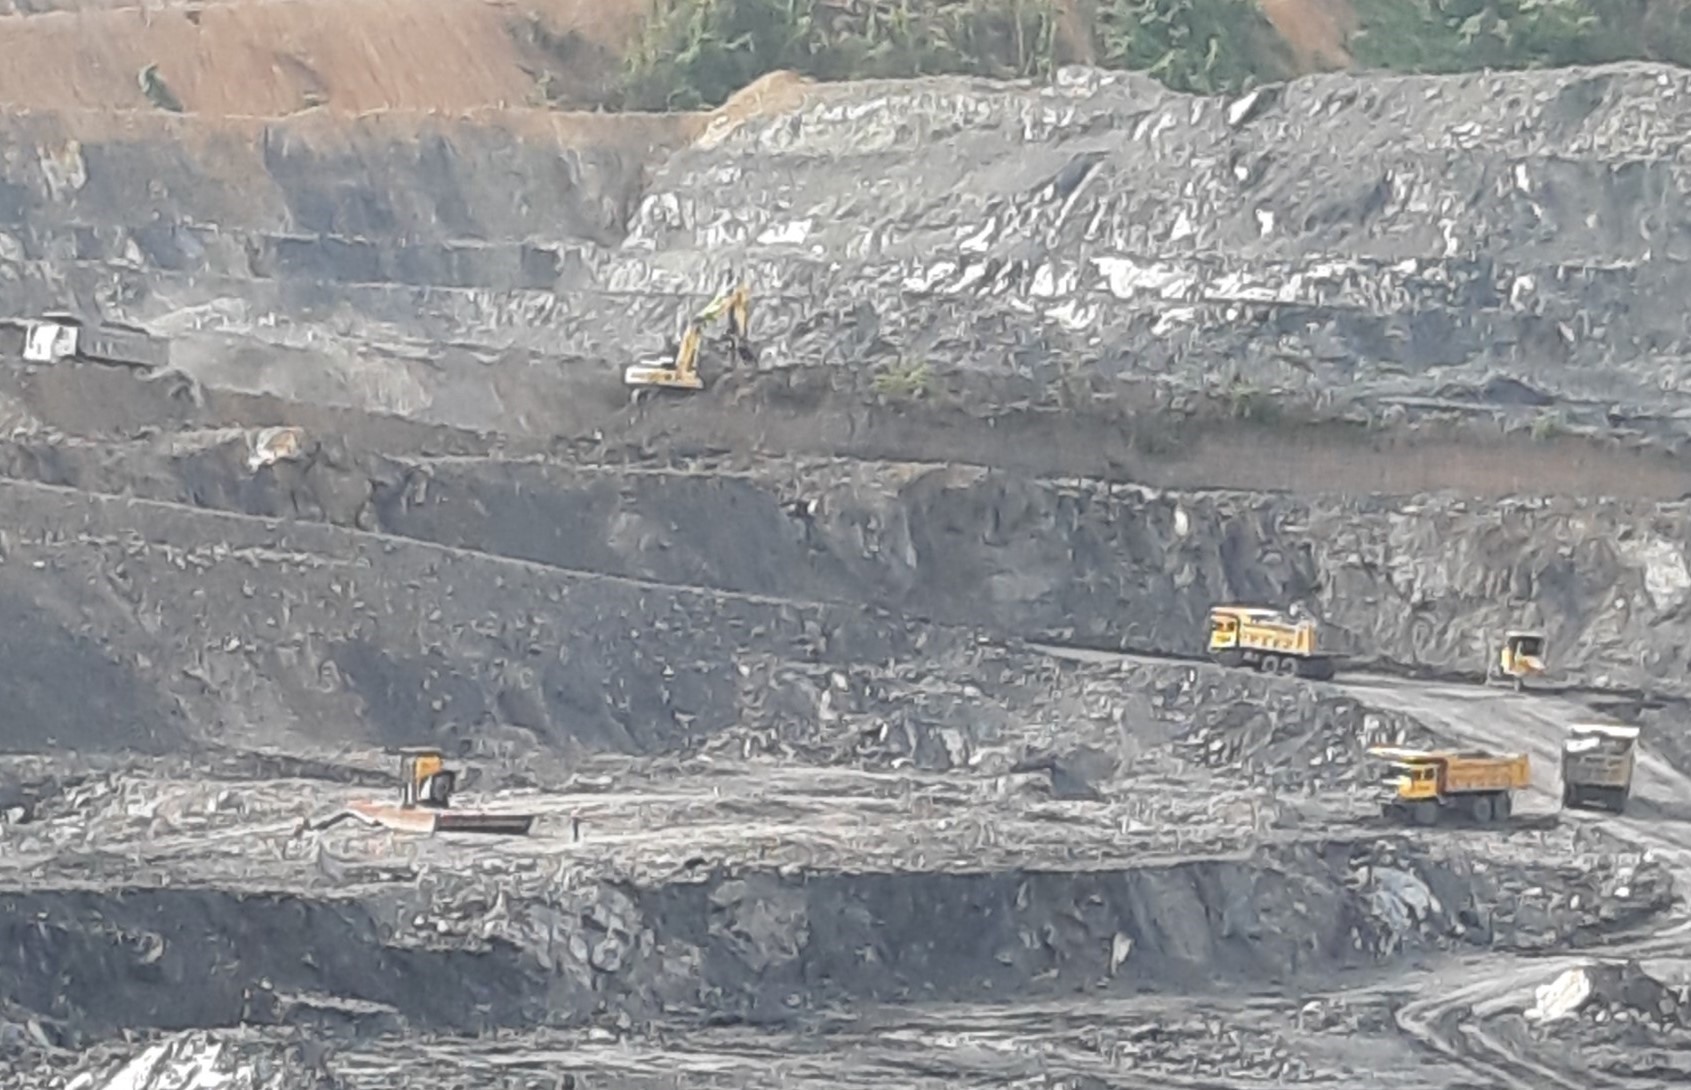 Mỏ than lộ thiên cách Cửa khẩu quốc tế La Lay khoảng 120km đang được khai thác. Ảnh: N.Hà.